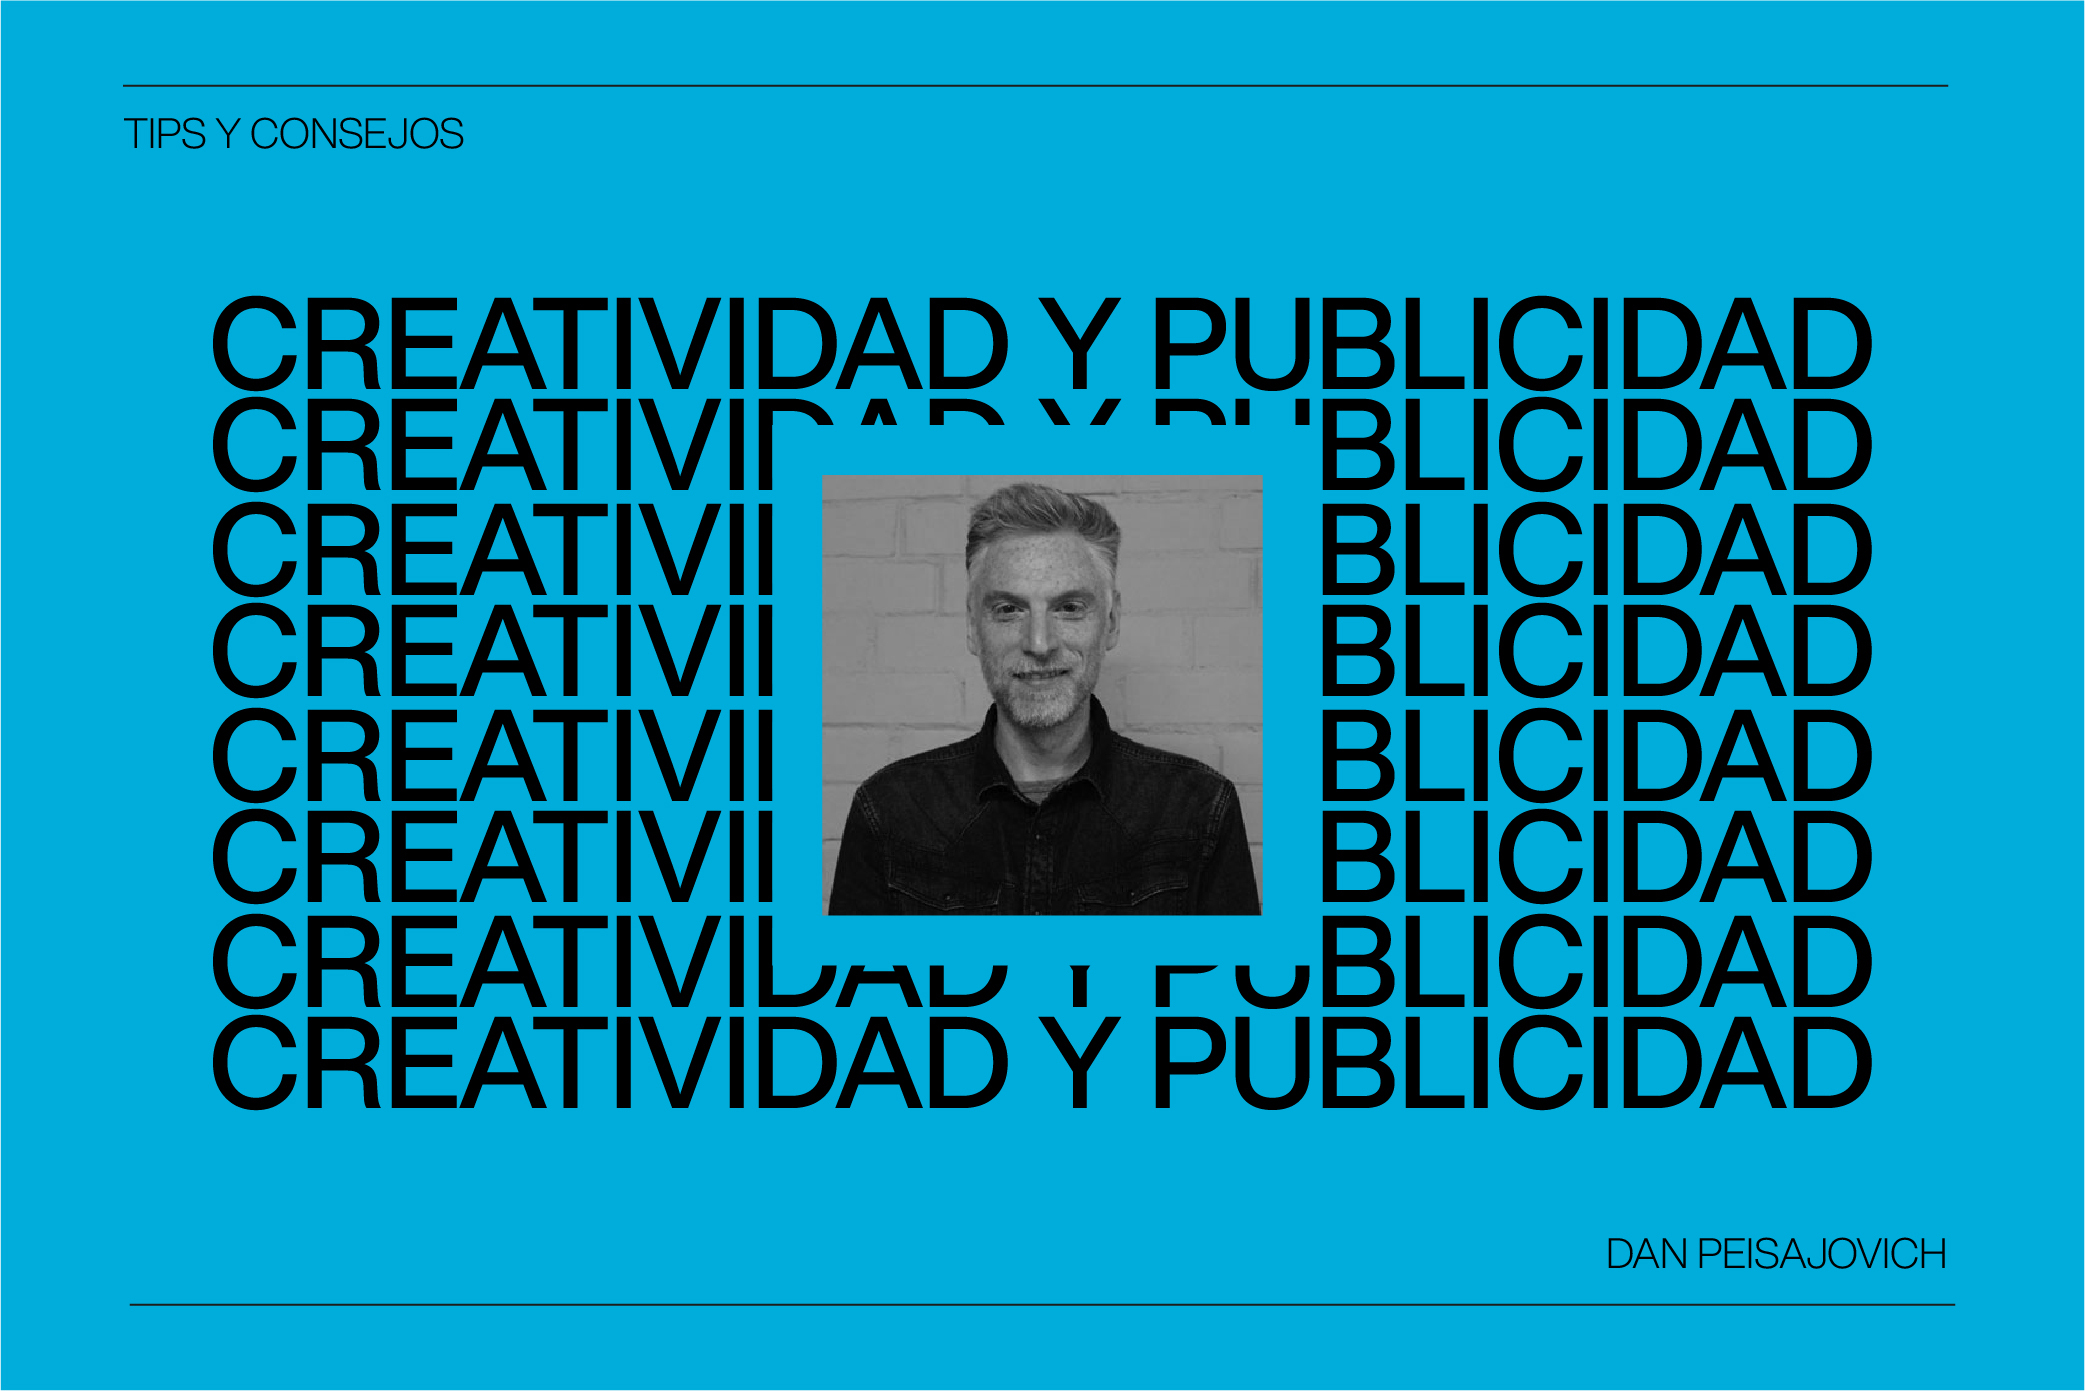 Tips y consejos de Dan Peisajovich sobre Creatividad y Publicidad